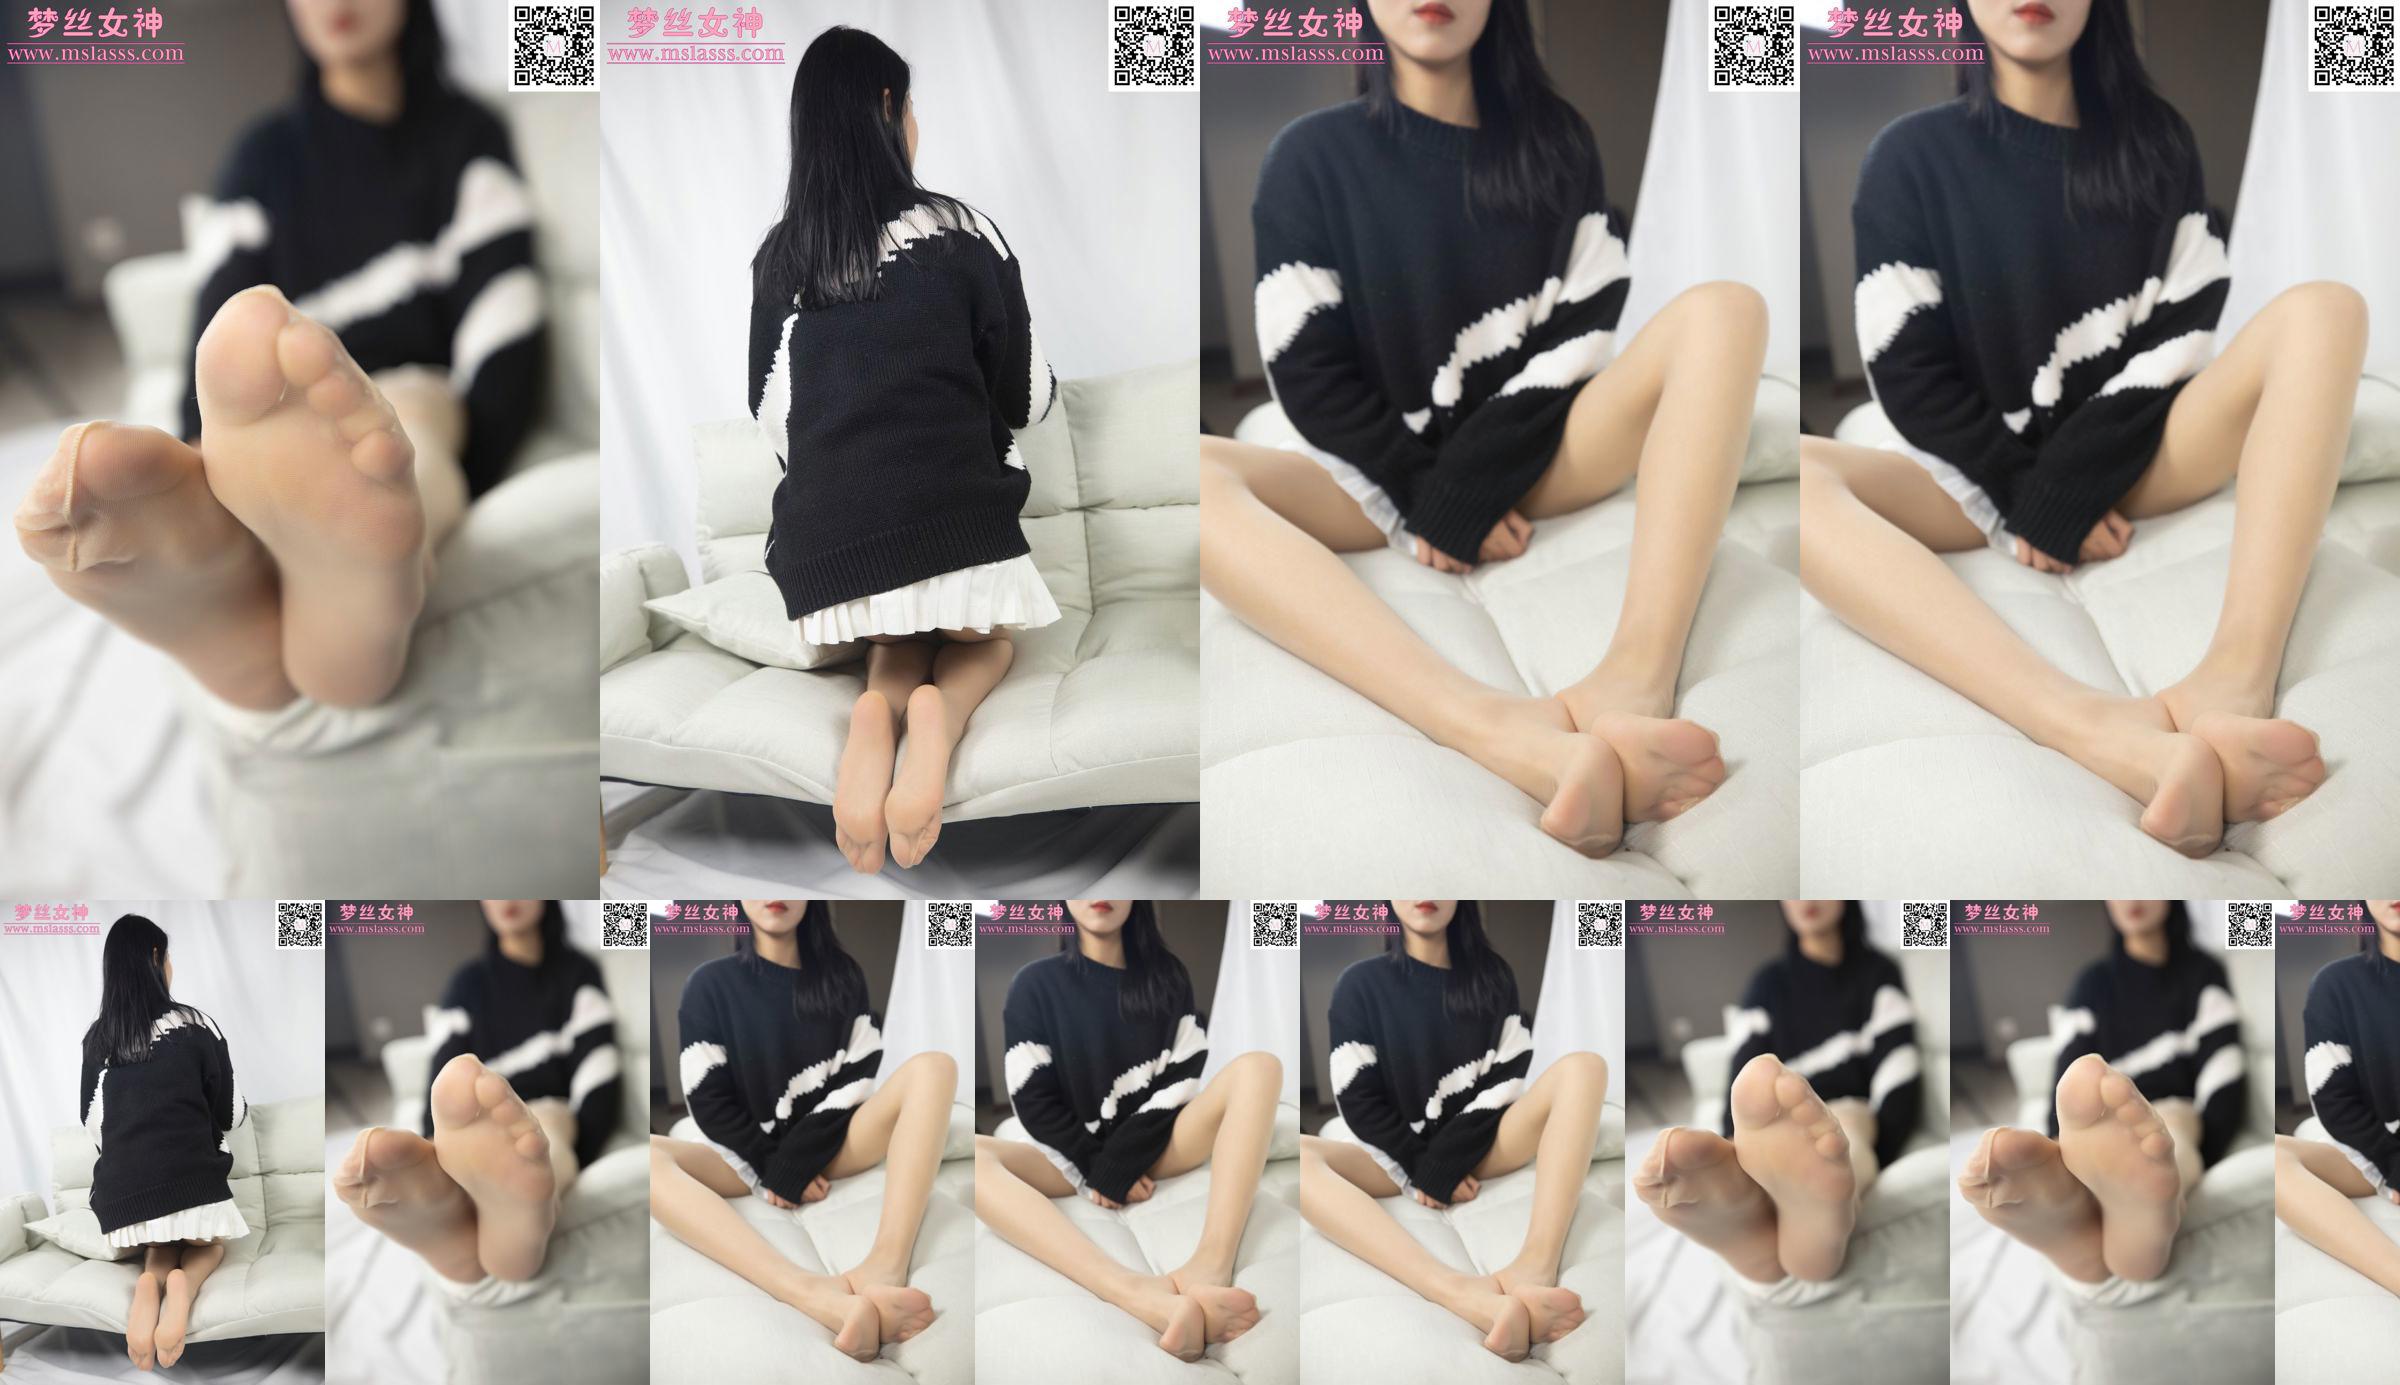 [Goddess of Dreams MSLASS] Xiaomi's trui kan haar lange benen niet stoppen No.123990 Pagina 1